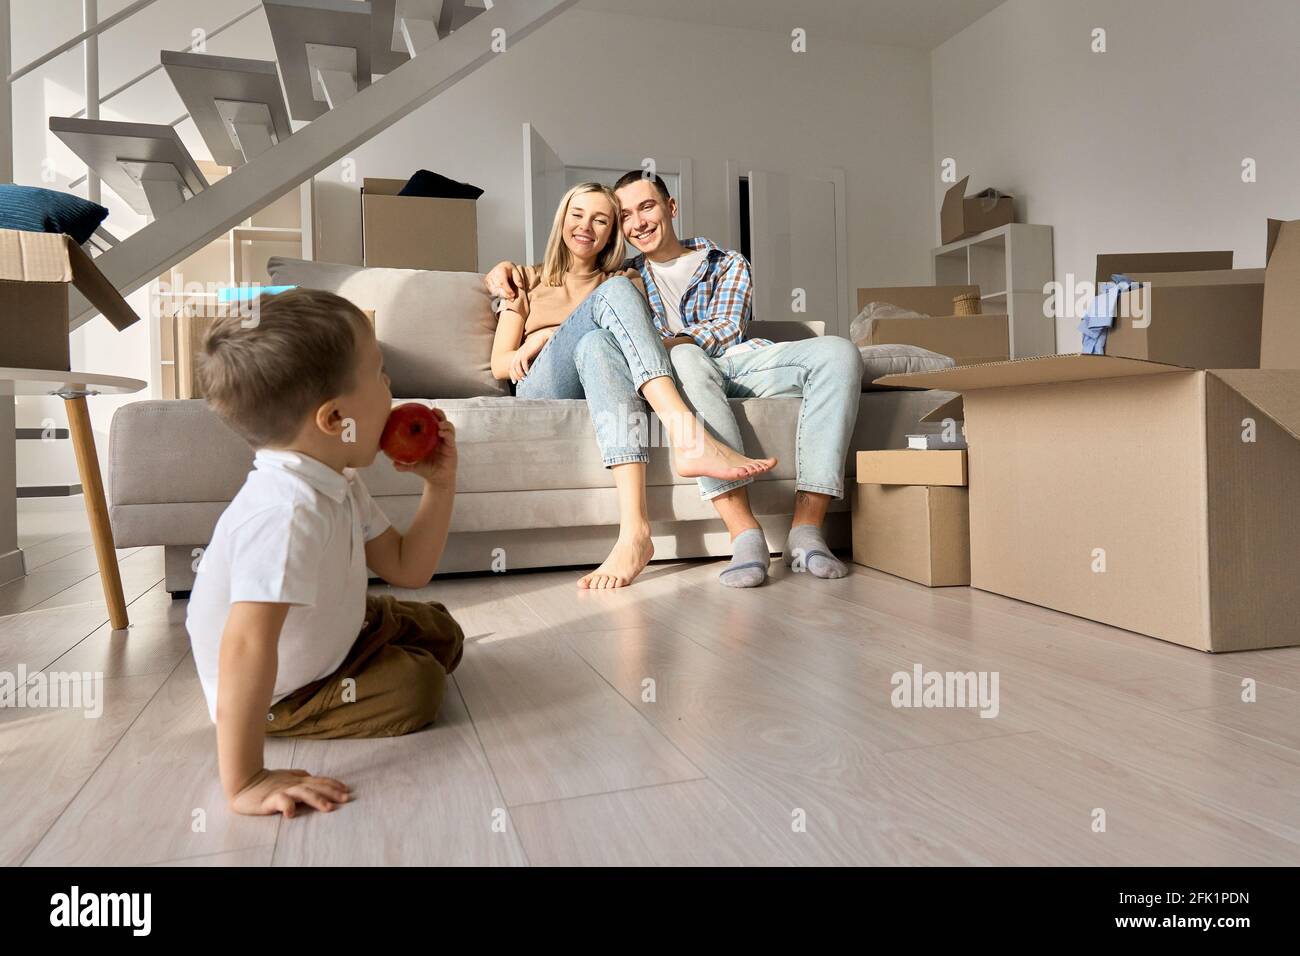 Un couple de familles heureux avec un fils d'enfant se détendant lors d'une journée de déplacement dans le nouveau salon de la maison. Banque D'Images